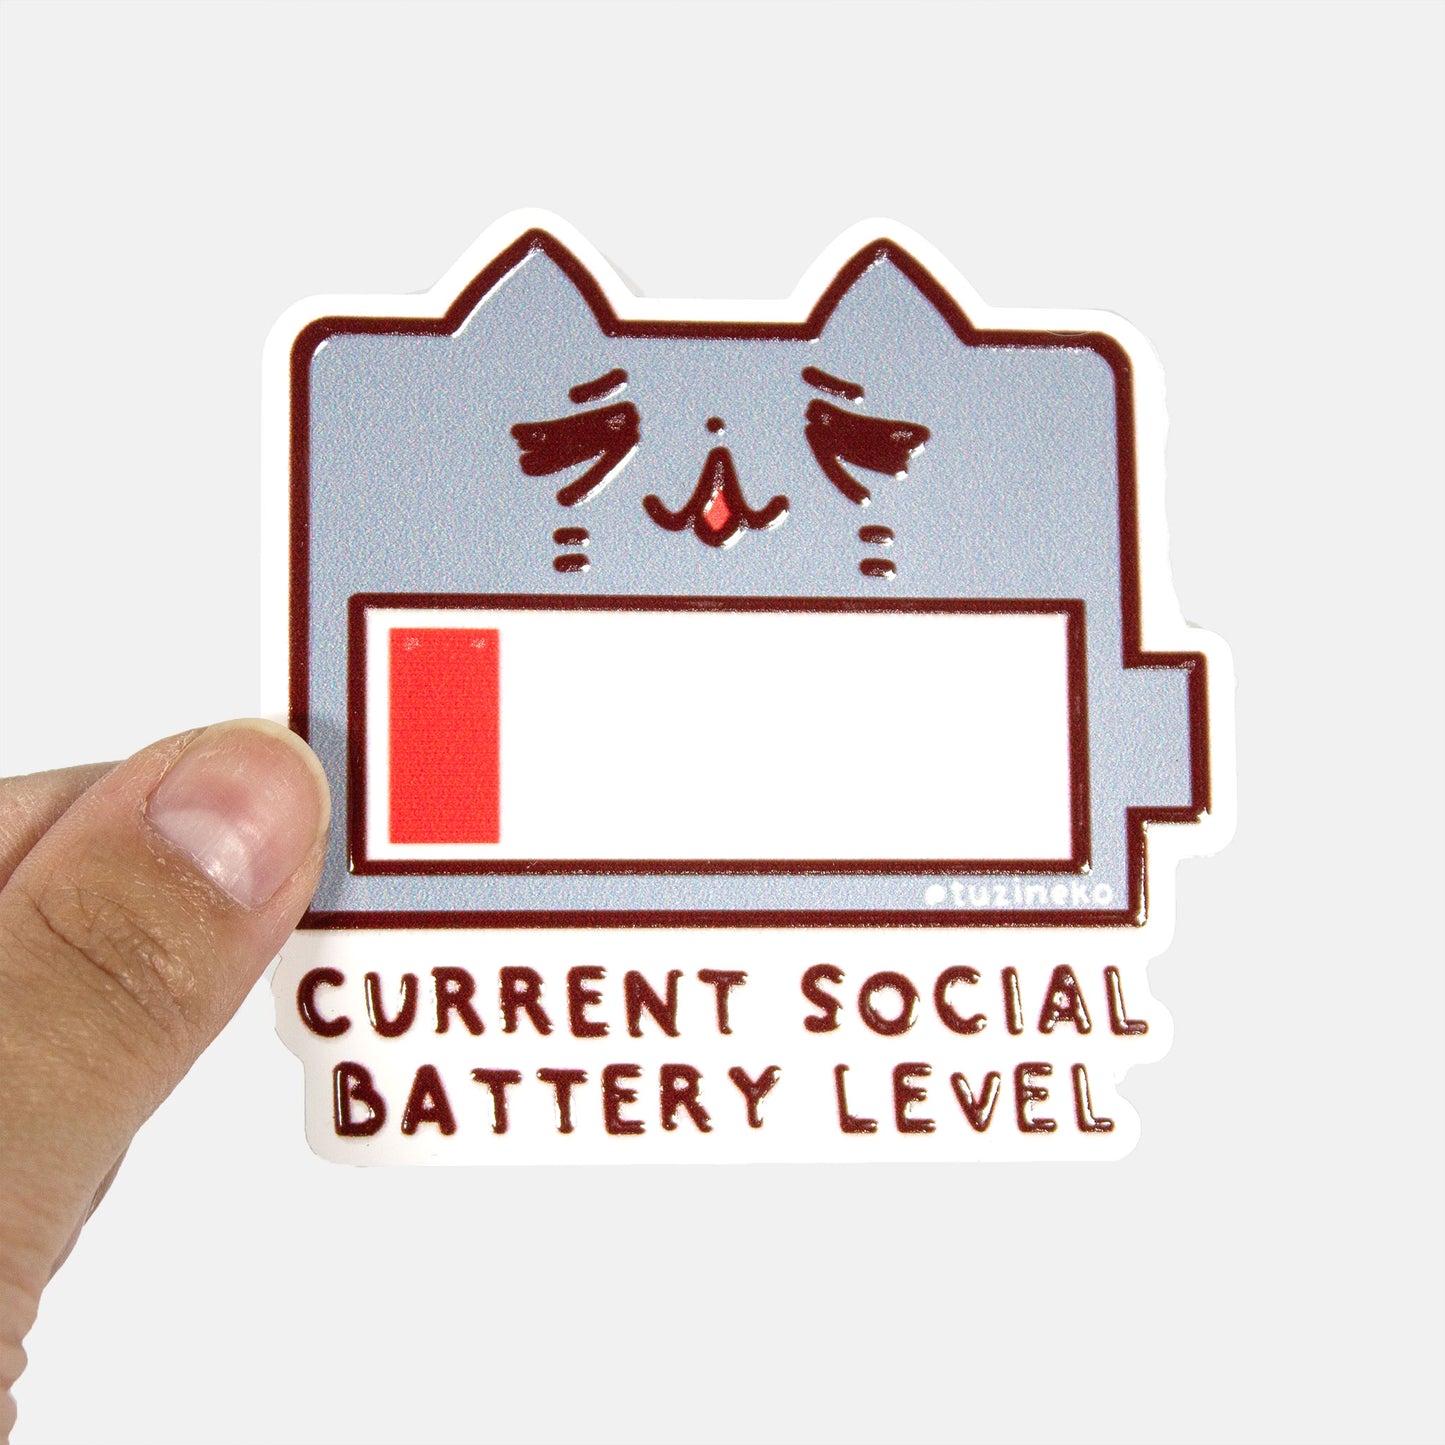 Neko "Current Social Battery Level" Matte Waterproof Sticker with Gloss Spot UV